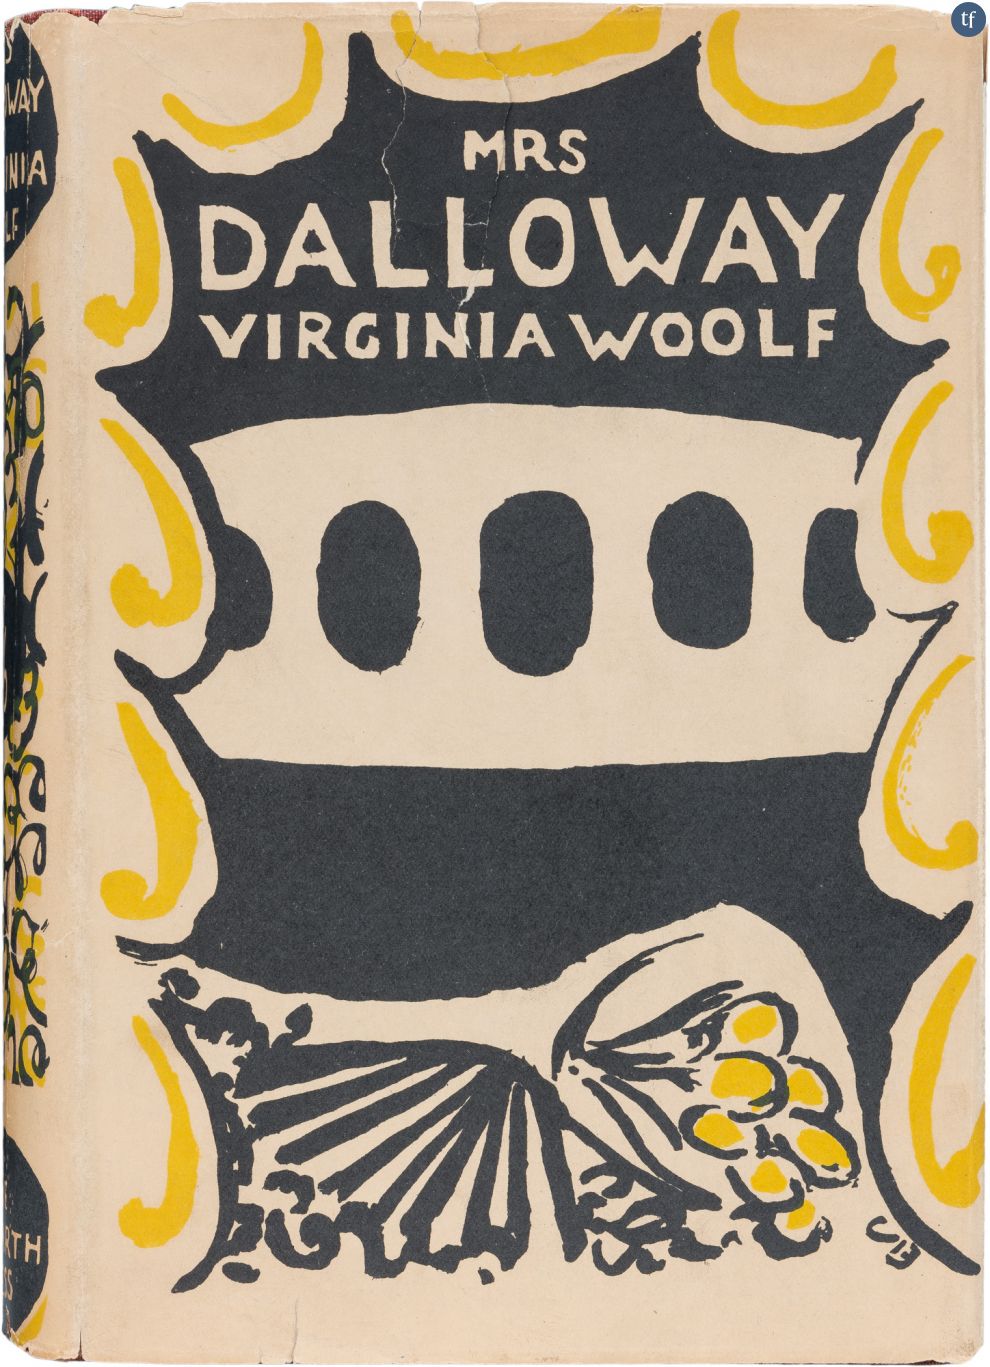 Virginia Woolf avait été nommée icône du XXe siècle par la BBC.